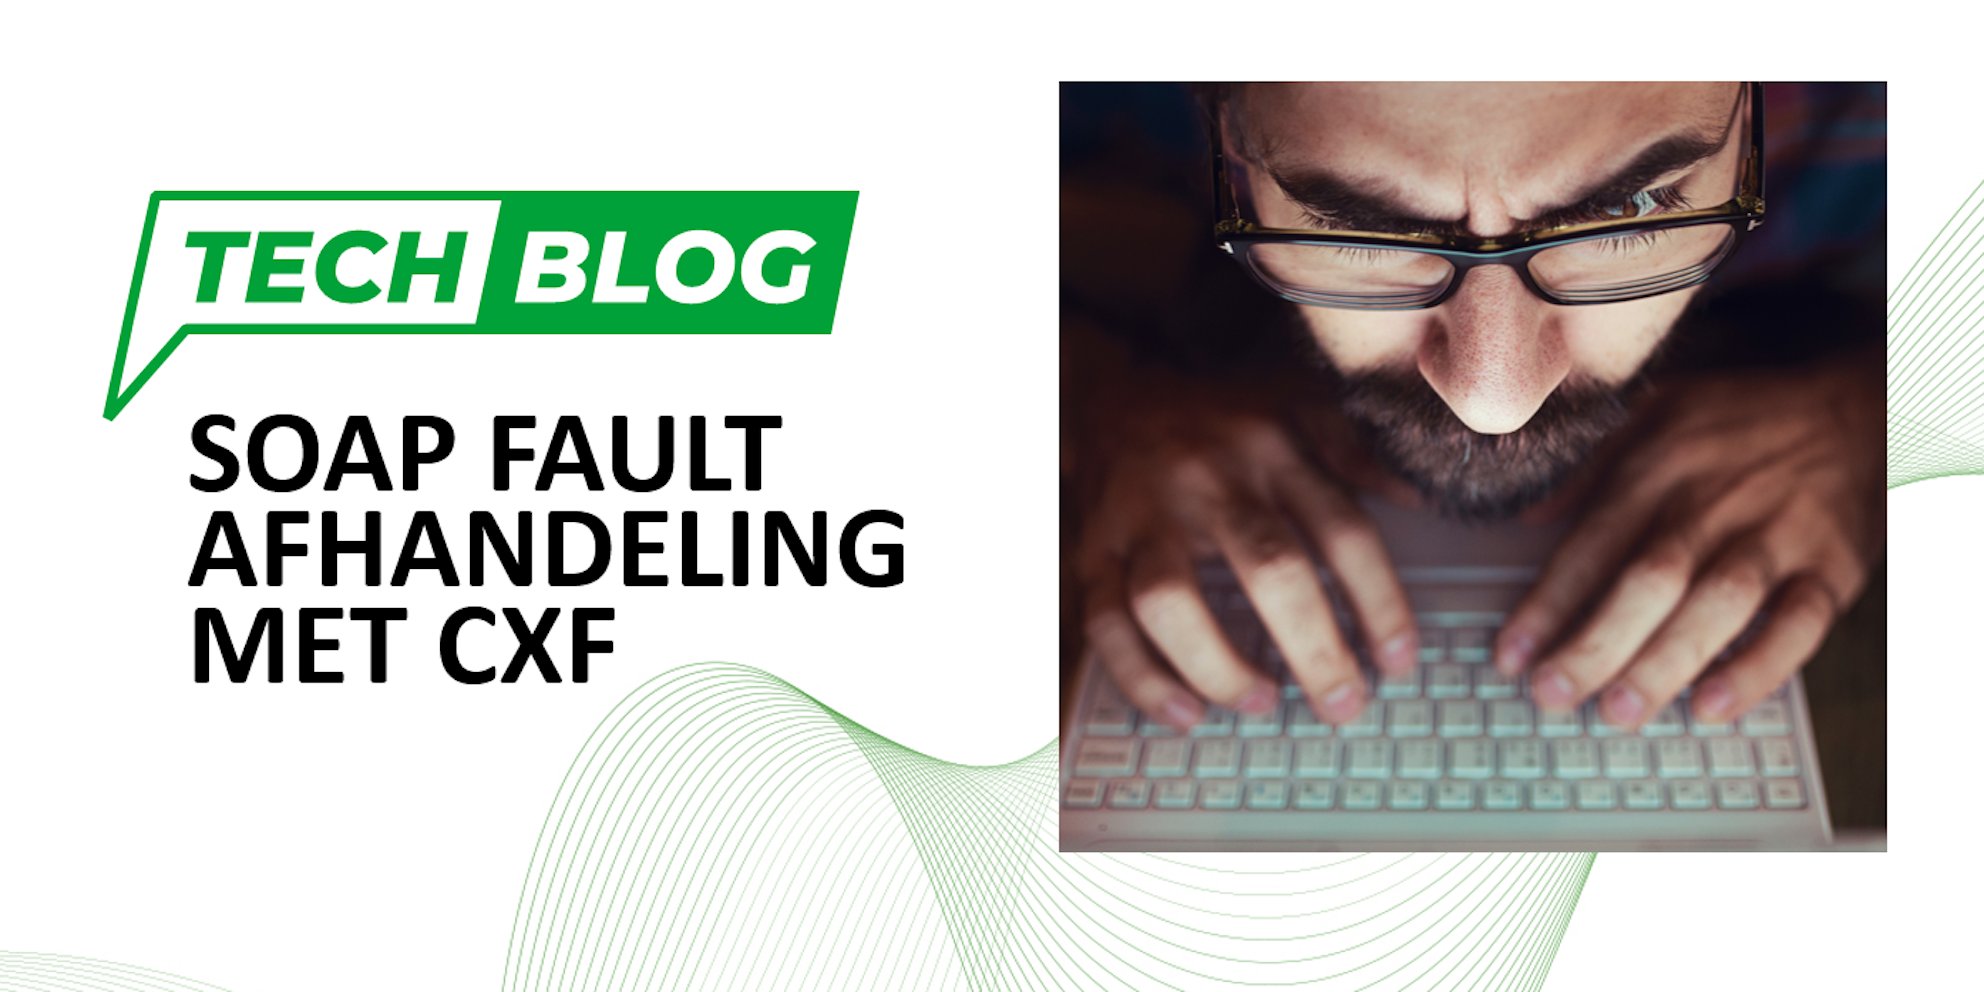 Techblog Conclusion - SOAP FAULT AFHANDELING MET CXF